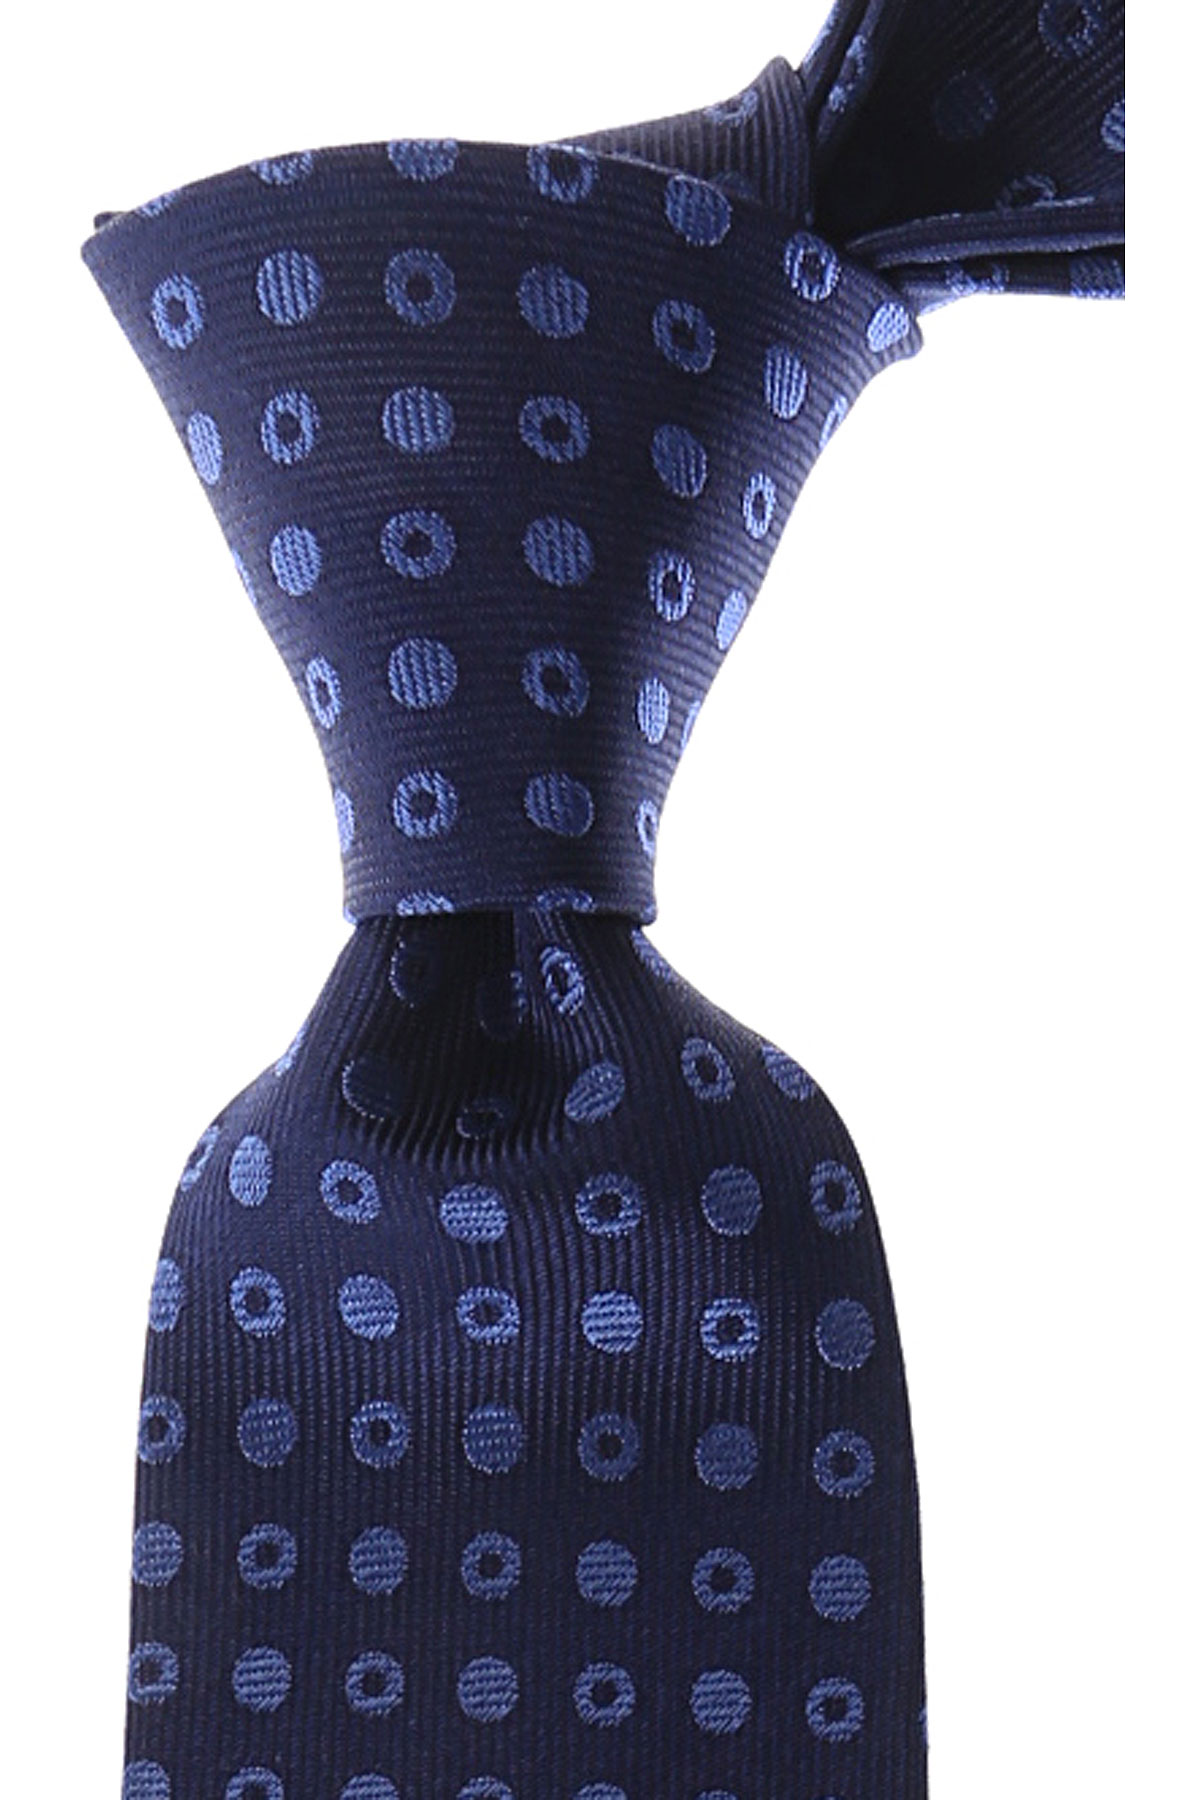 Cravates Gianni Versace , Bleu nuit, Soie, 2017